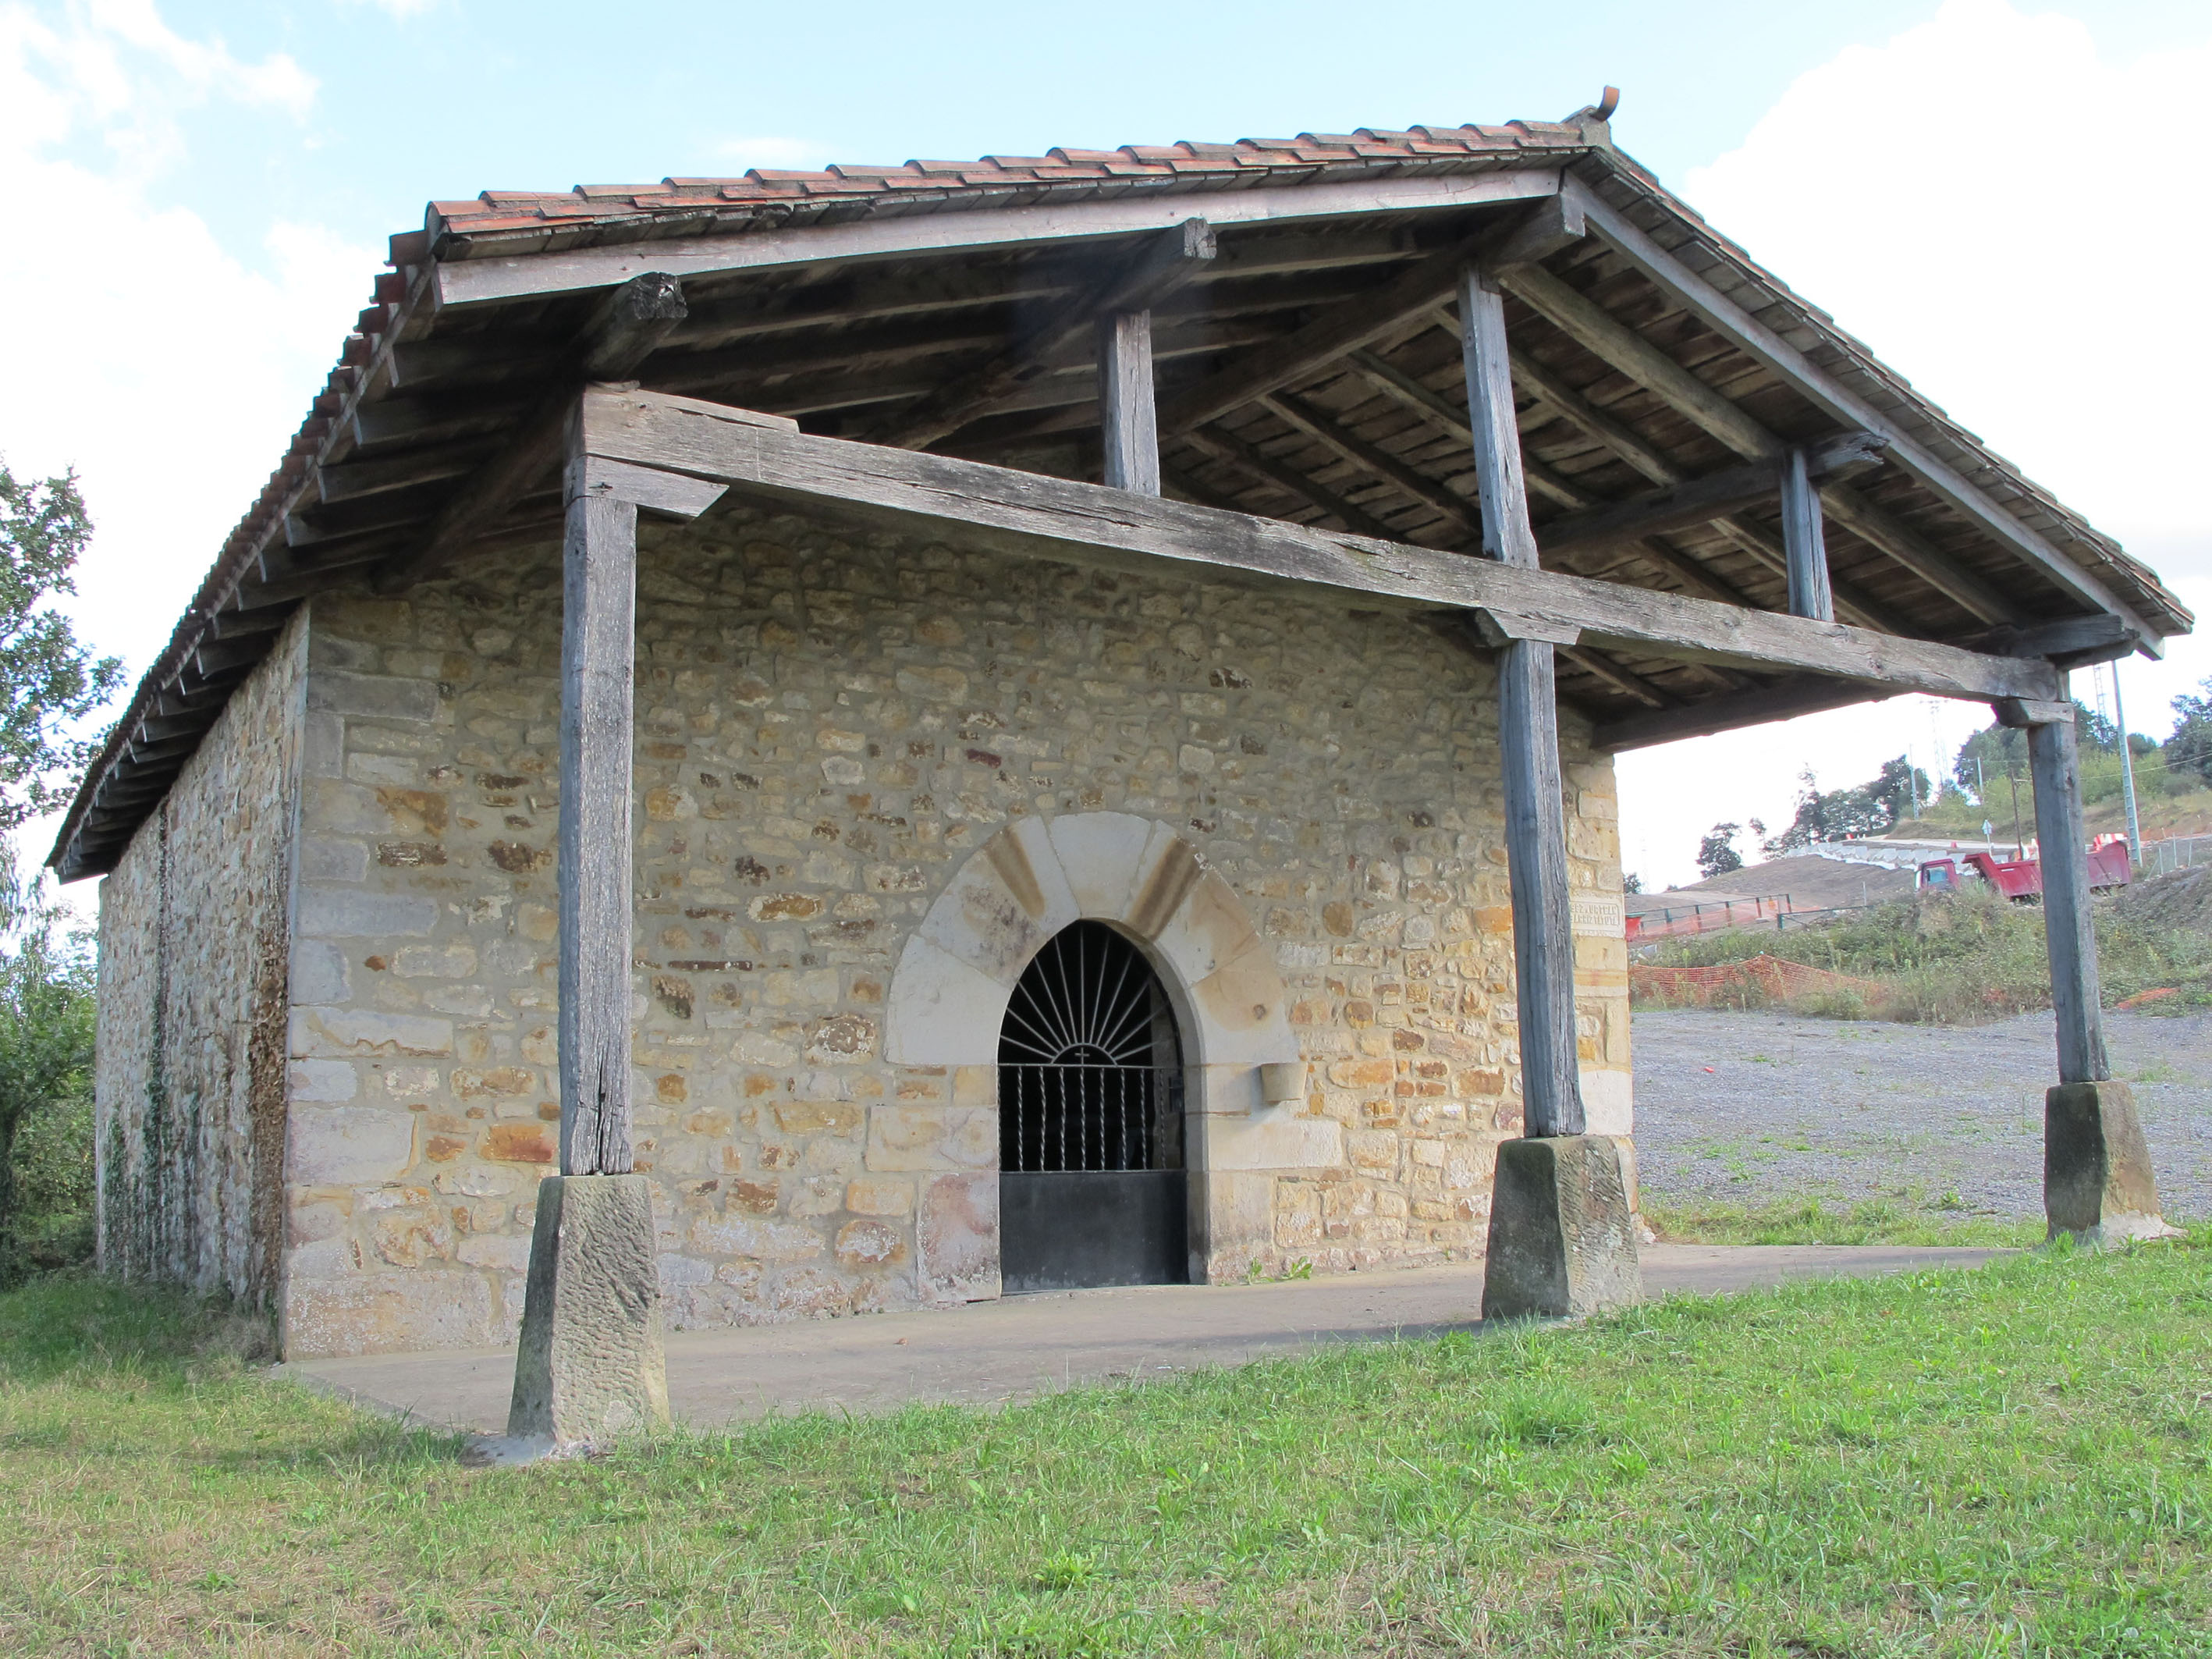 San Lorentzo ermita, Zornotza